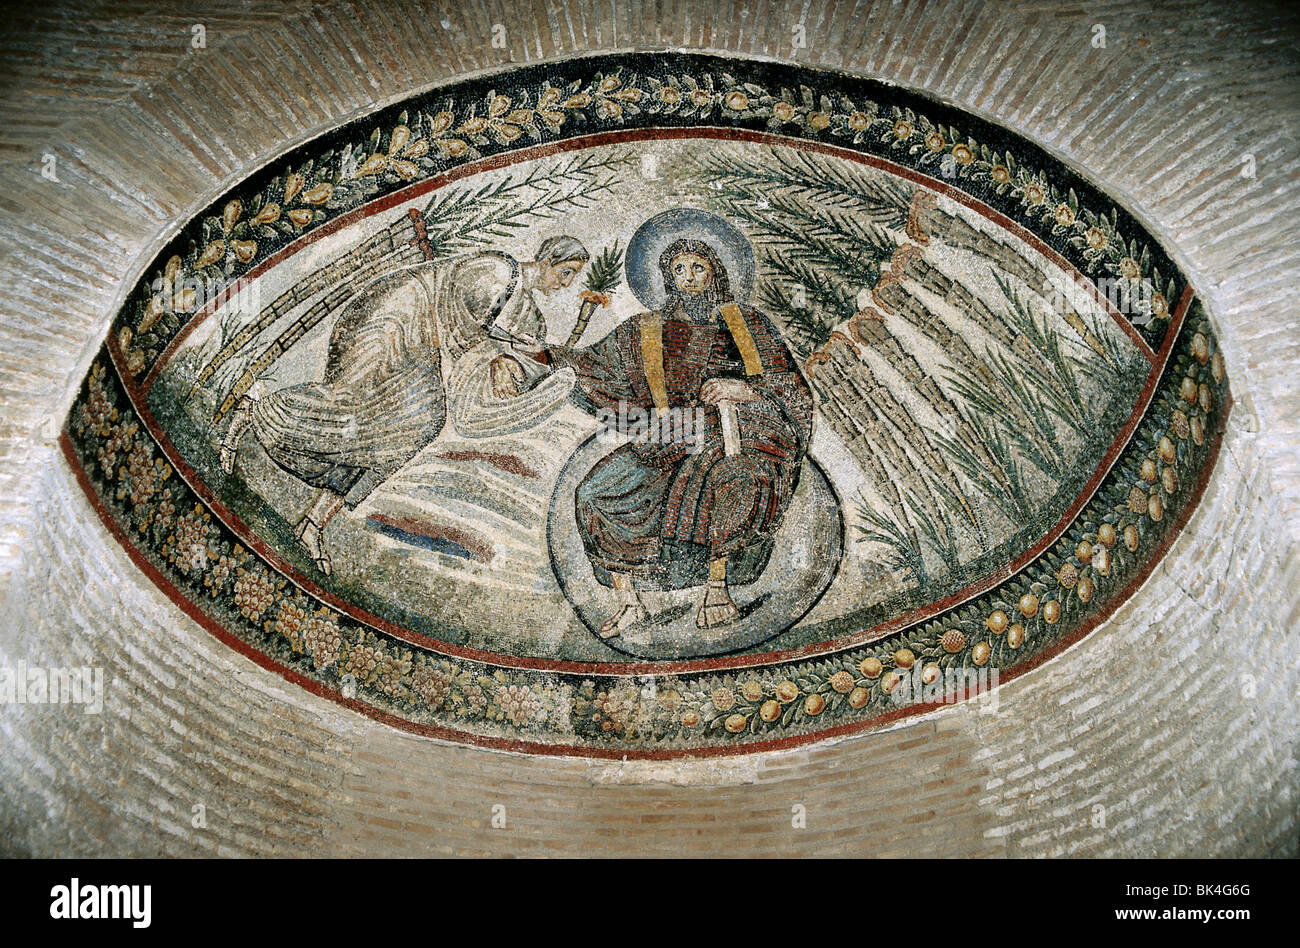 traditio-clavium-mosaico-nella-chiesa-di-santa-costanza-roma-bk4g6g